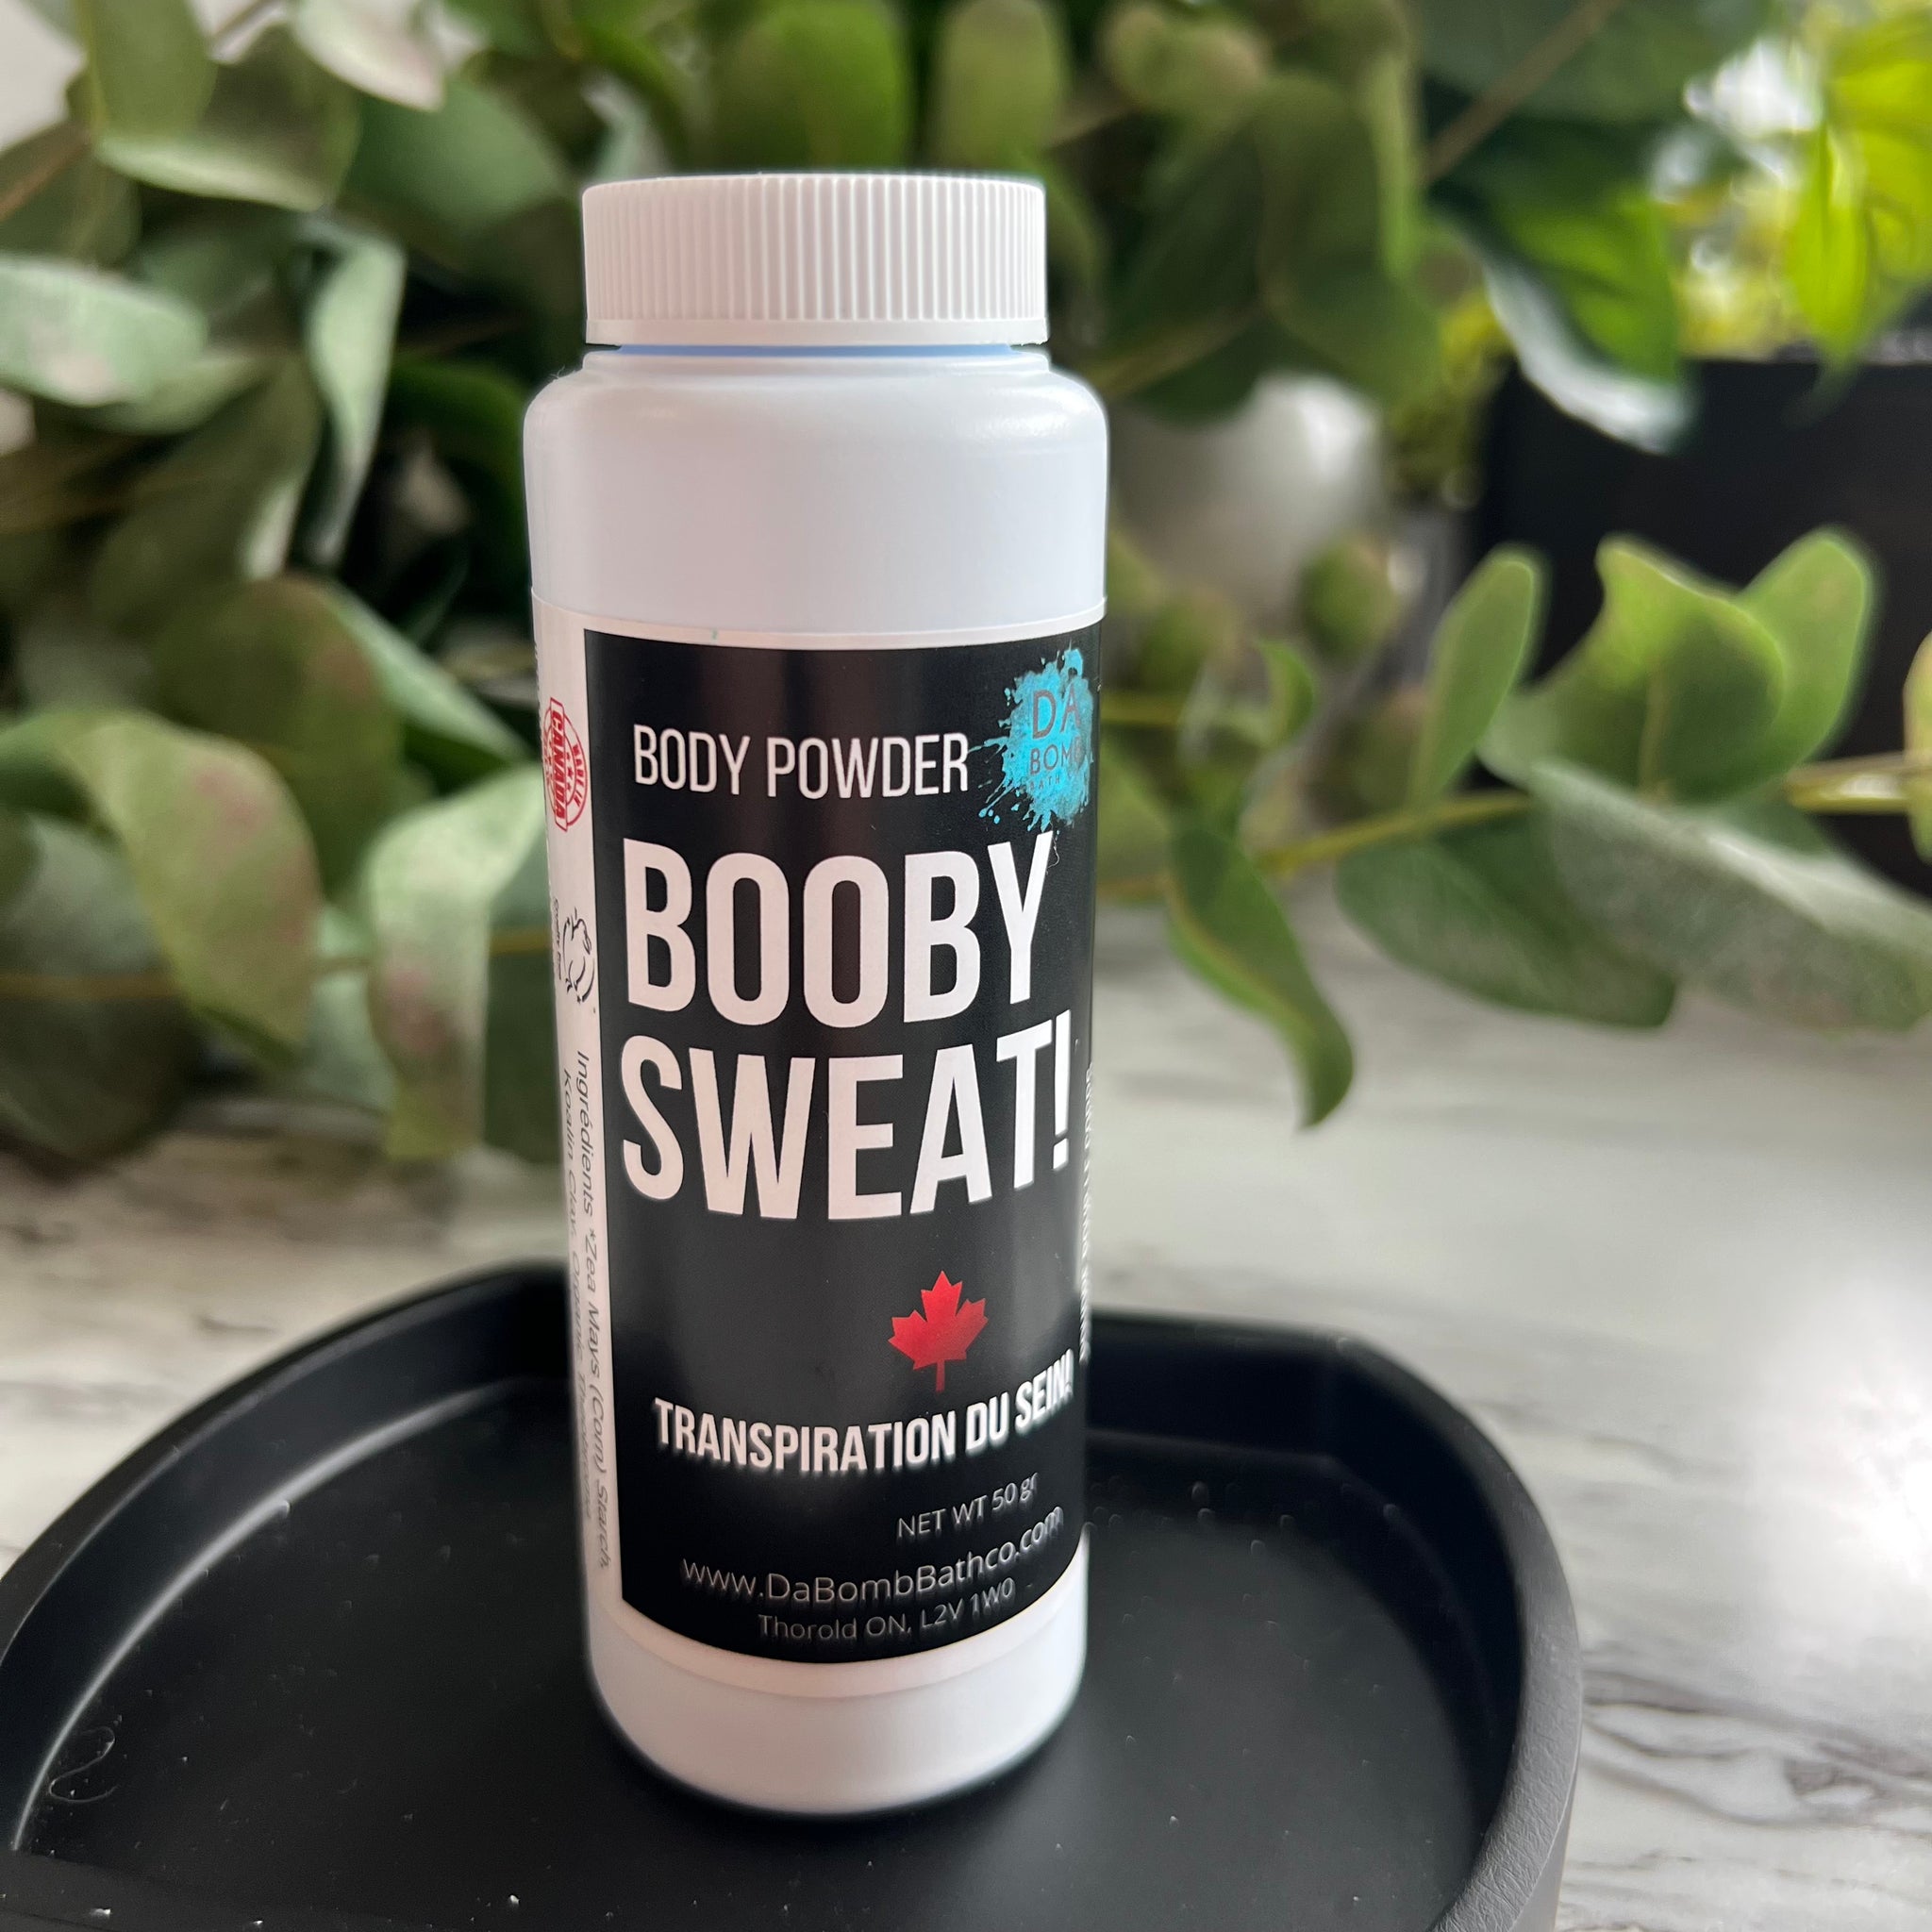 Booby Sweat!  Body Powder